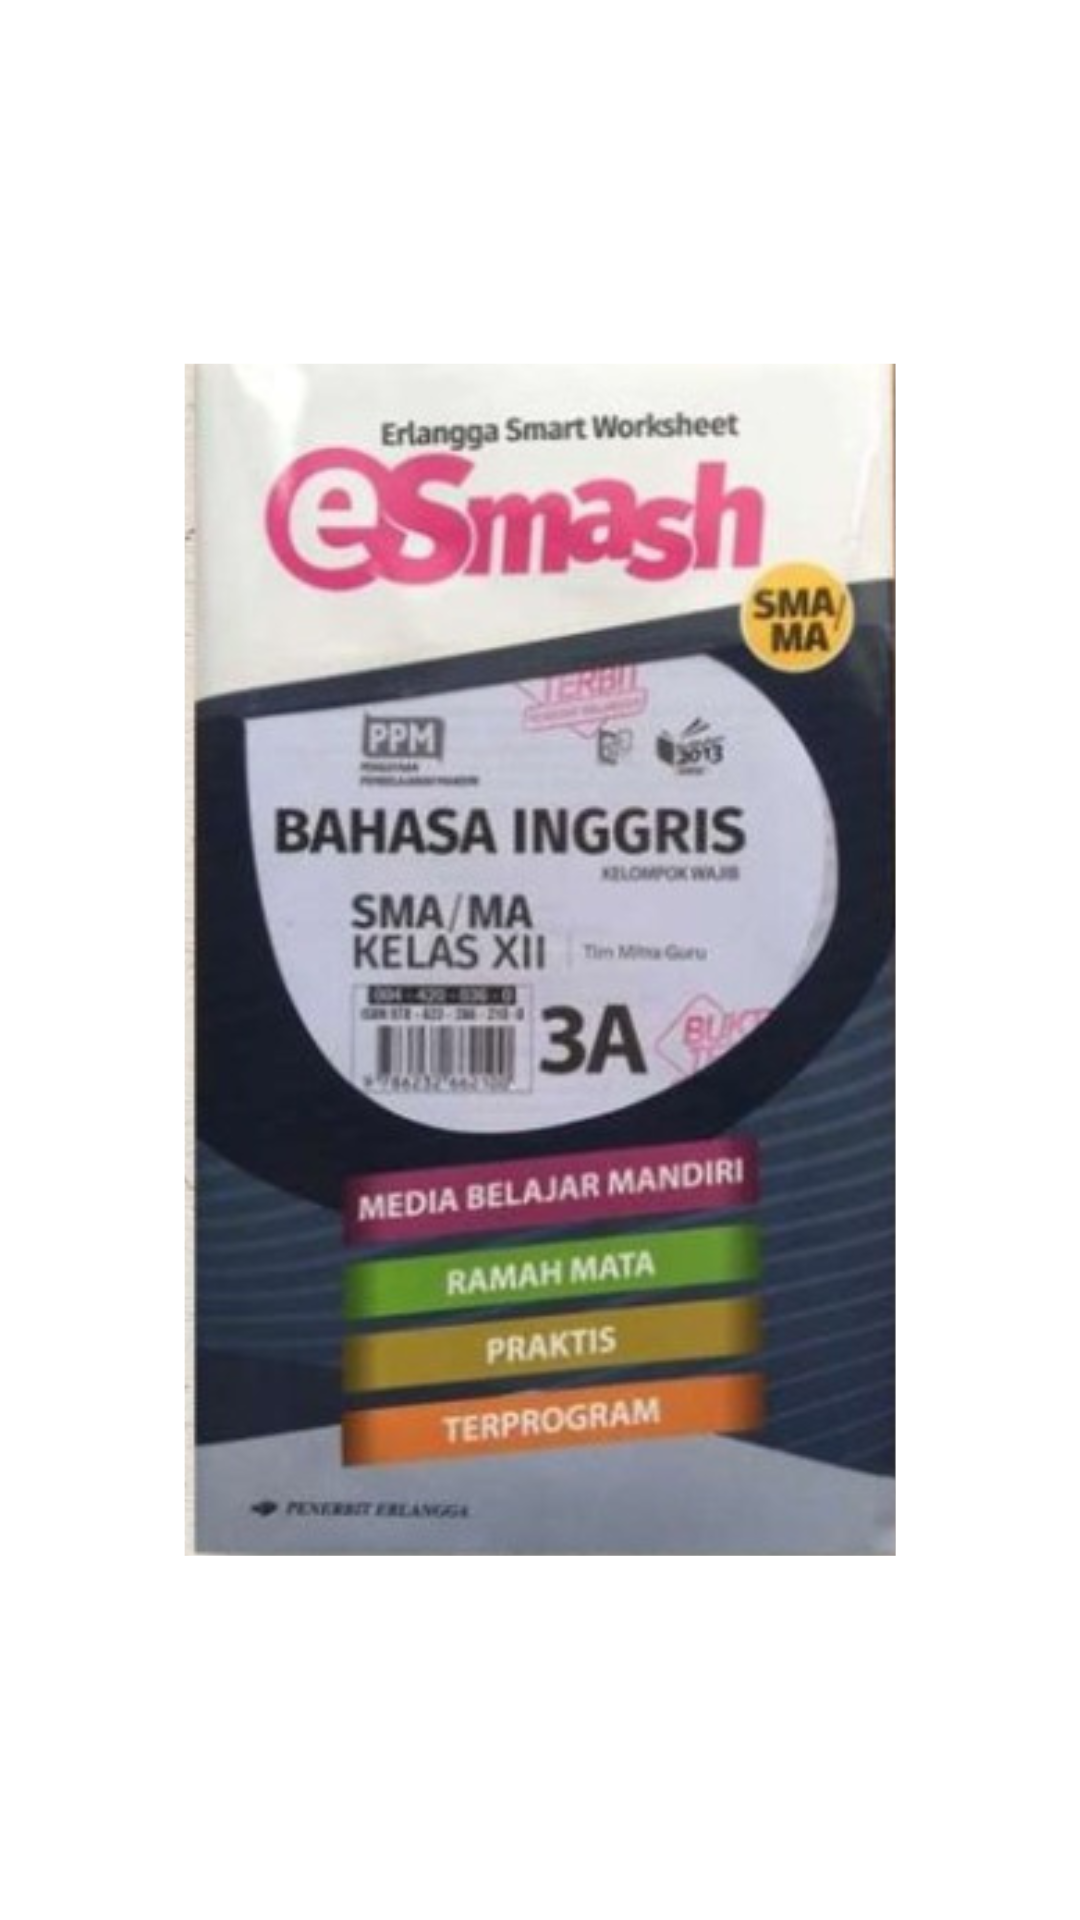 e-smash-b-indonesia-smp-mts-jl-1b-k13n